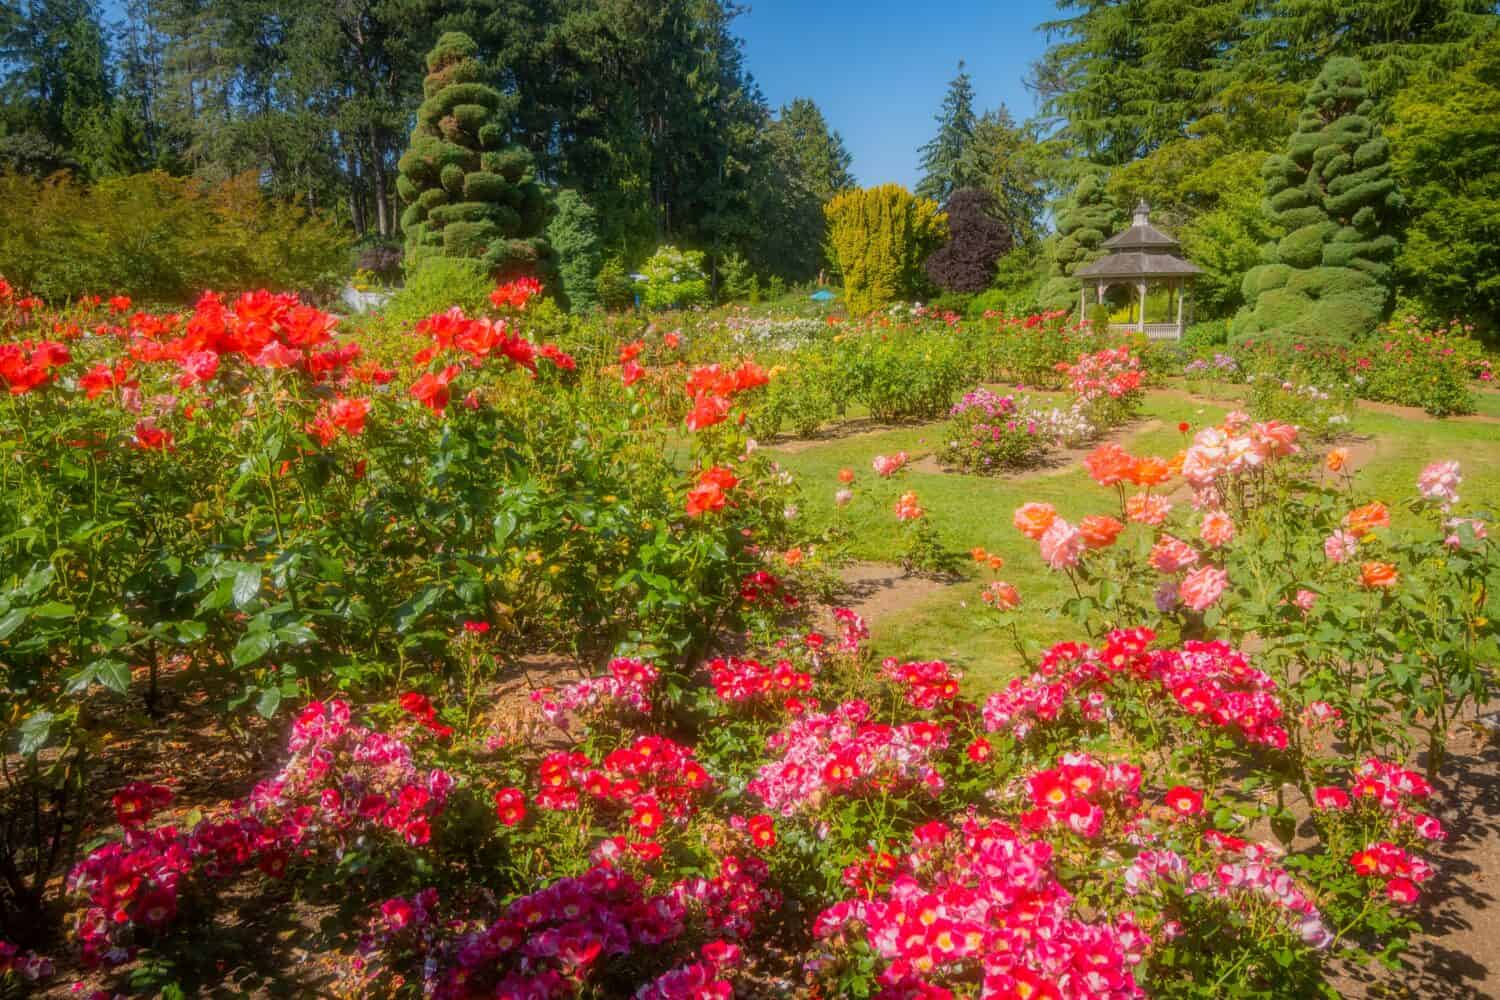 Bellissimi fiori di rose rosa nel giardino verde nella soleggiata giornata estiva.  Mattina d'estate nel parco.  Roseto del parco del bosco